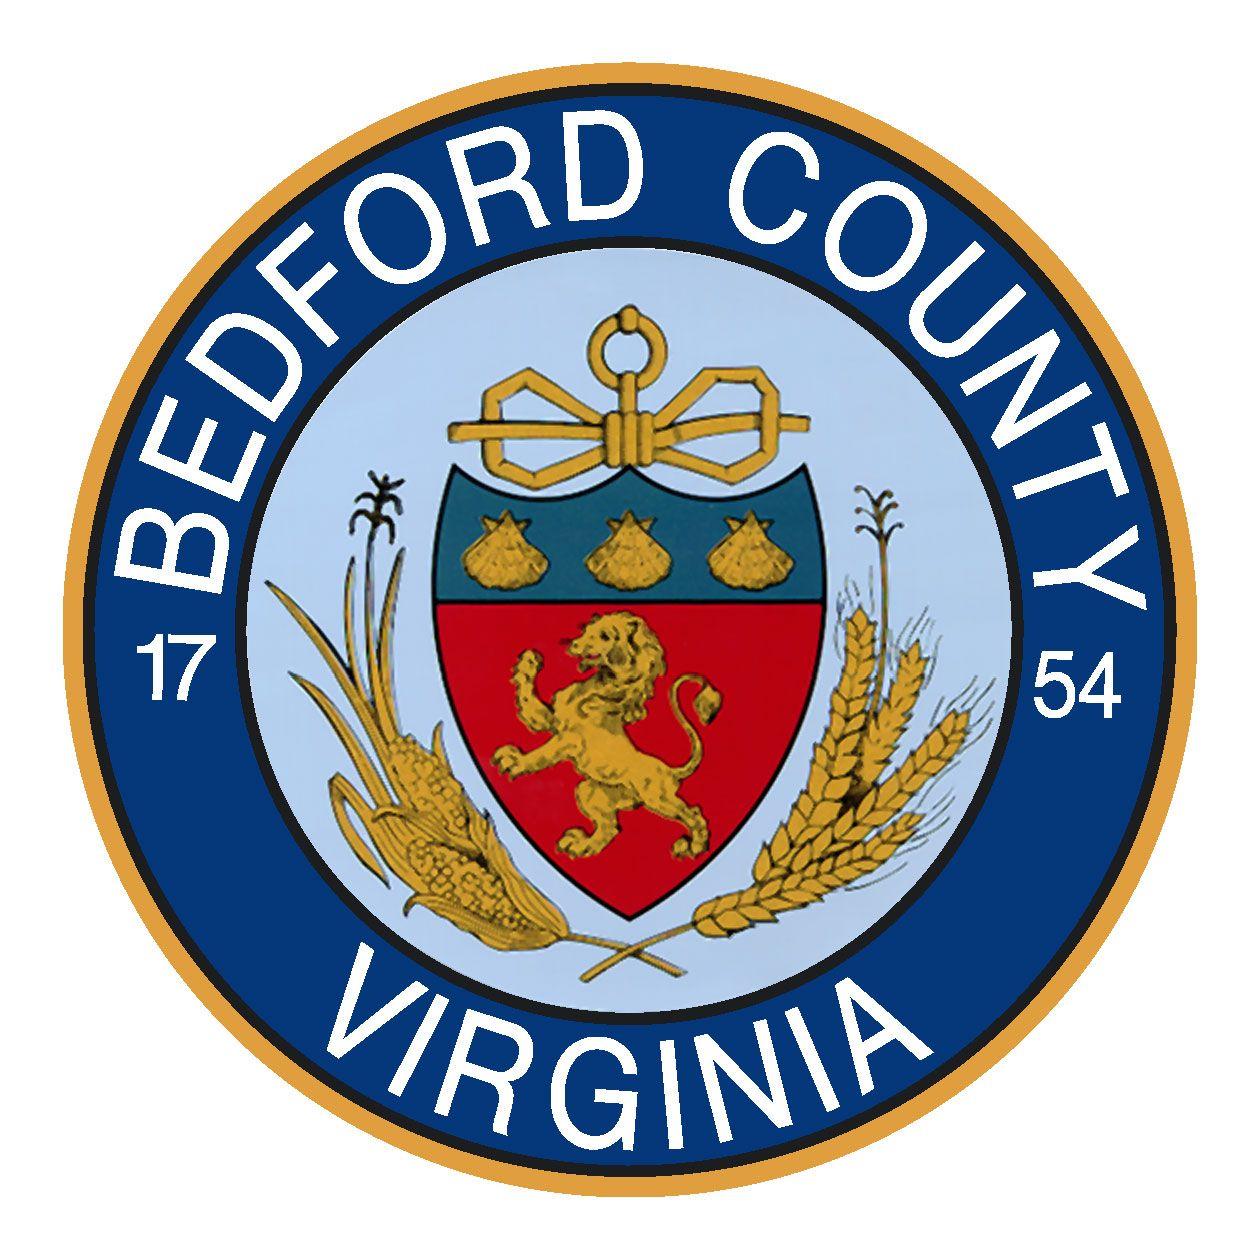 Bedford Logo - BEDFORD-COUNTY-LOGO - Bedford County Economic Development